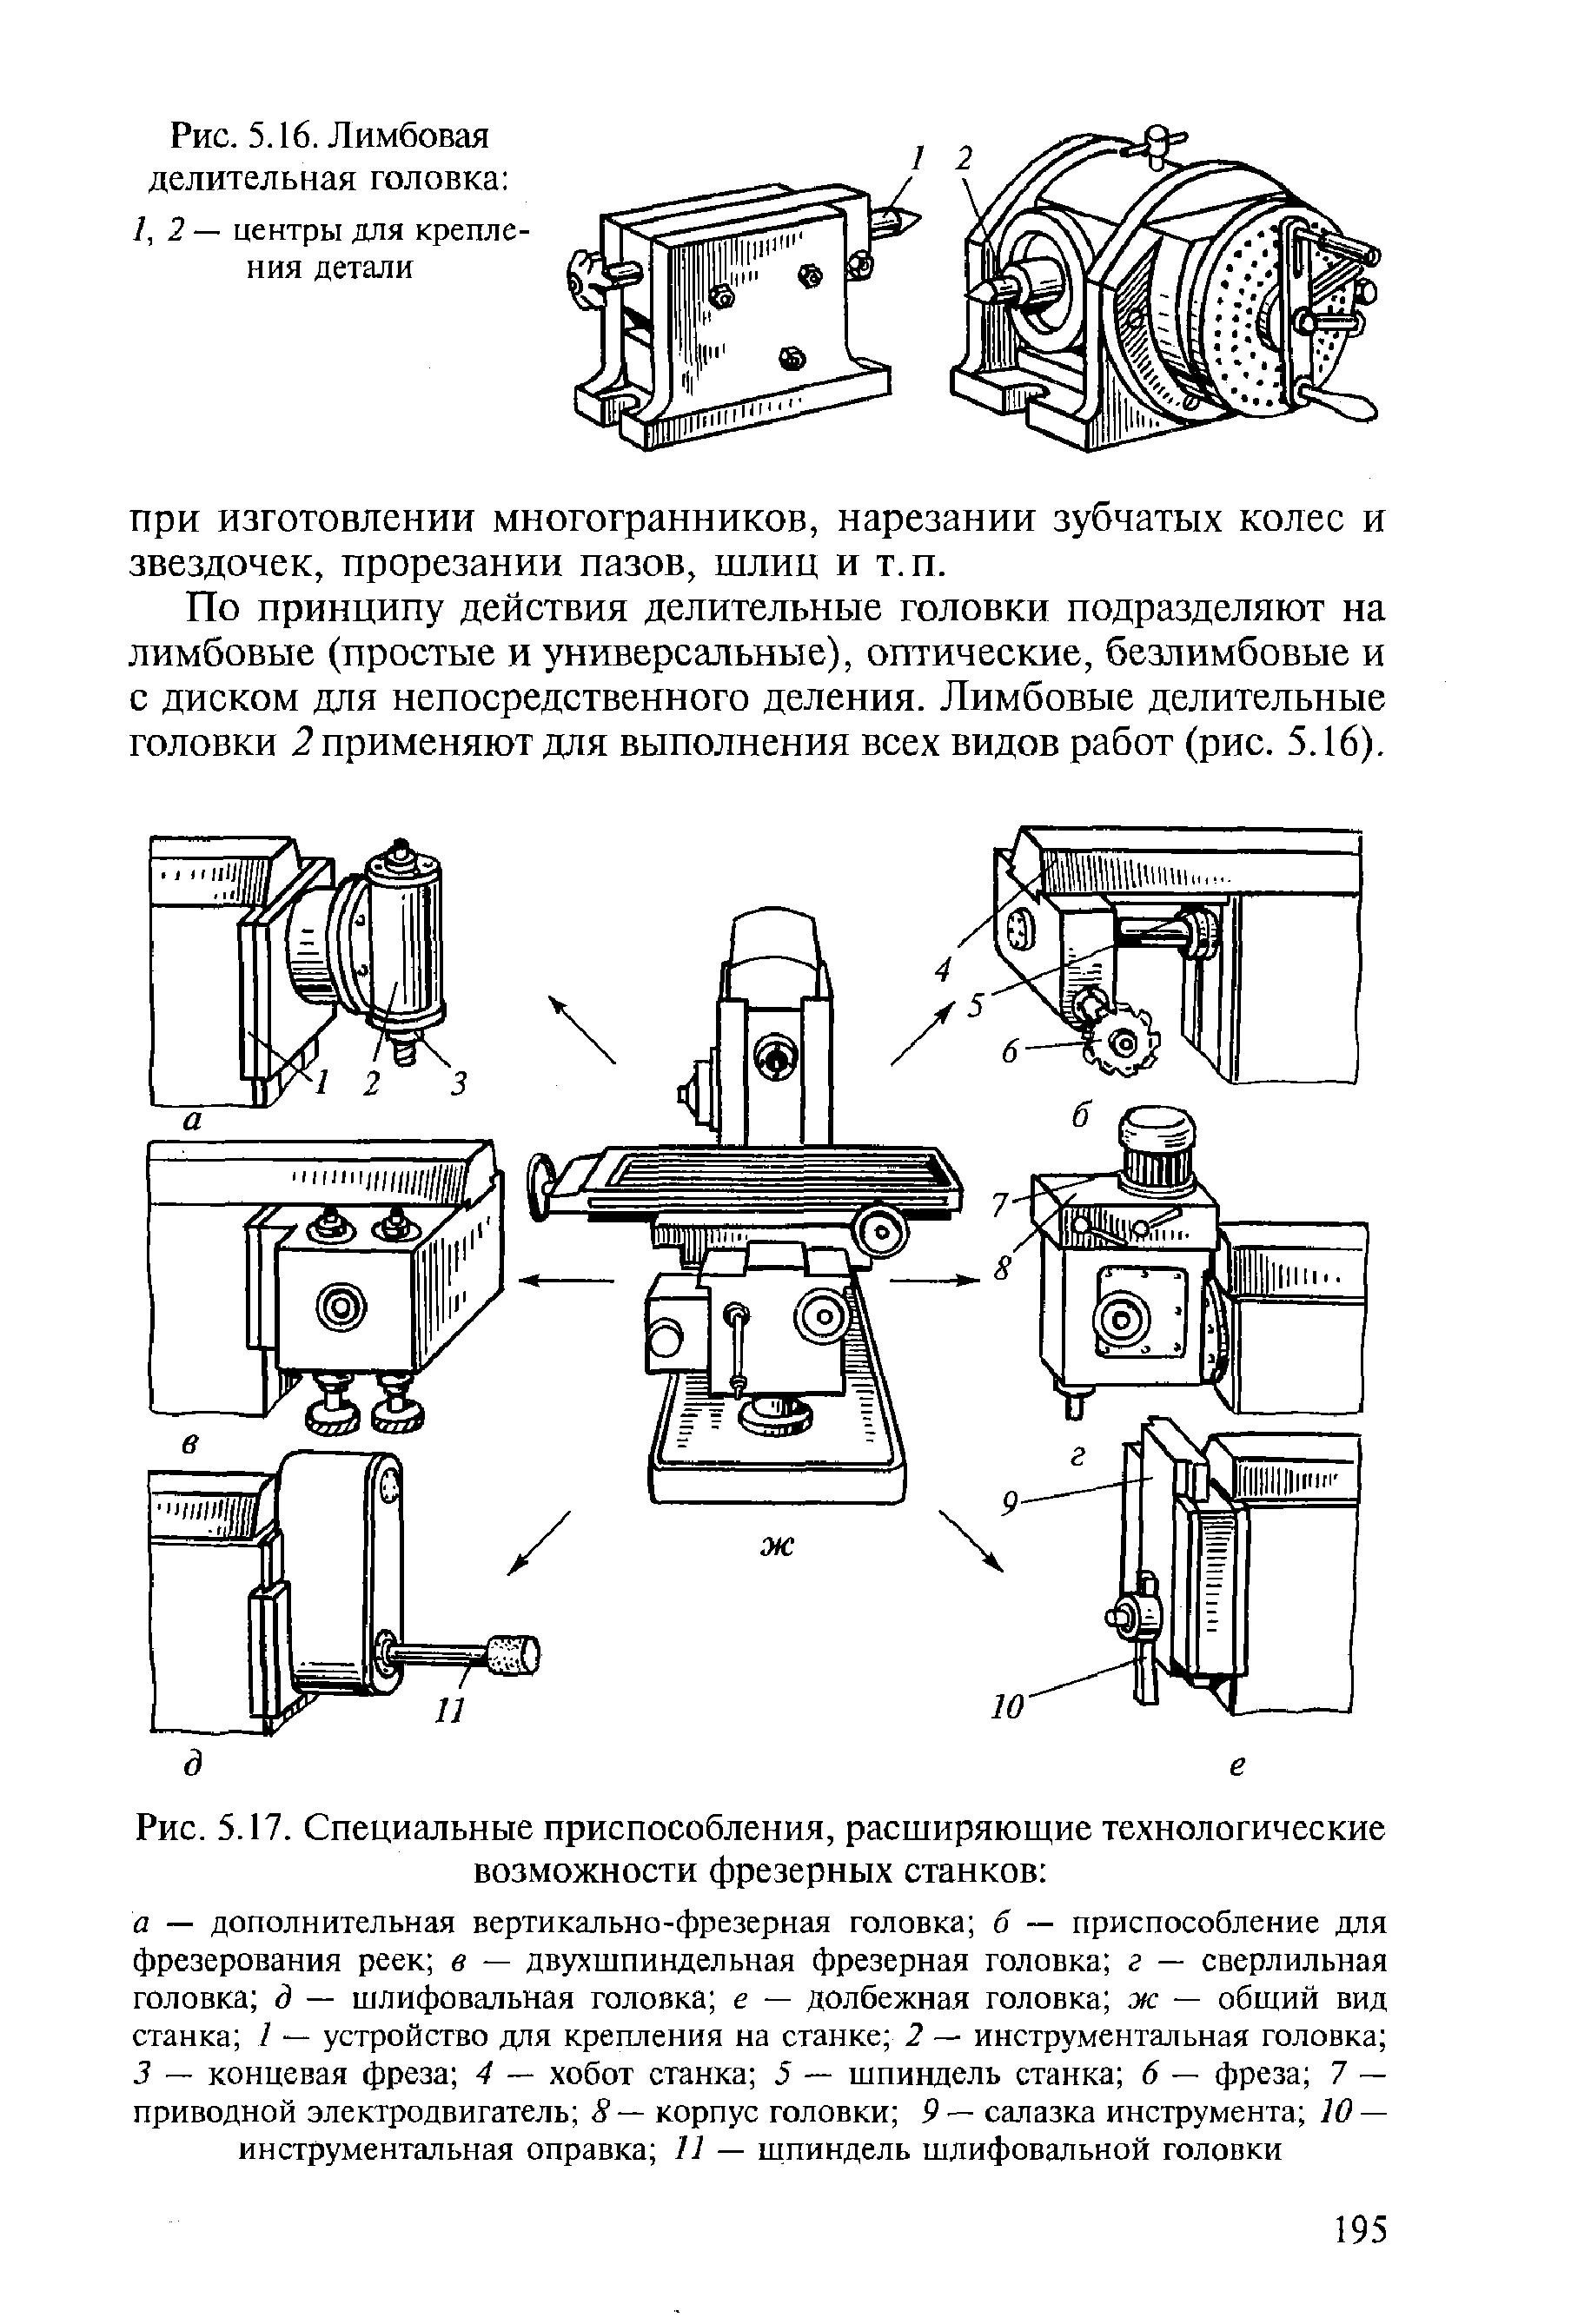 Конструкция и применение делительных головок для фрезерных станков